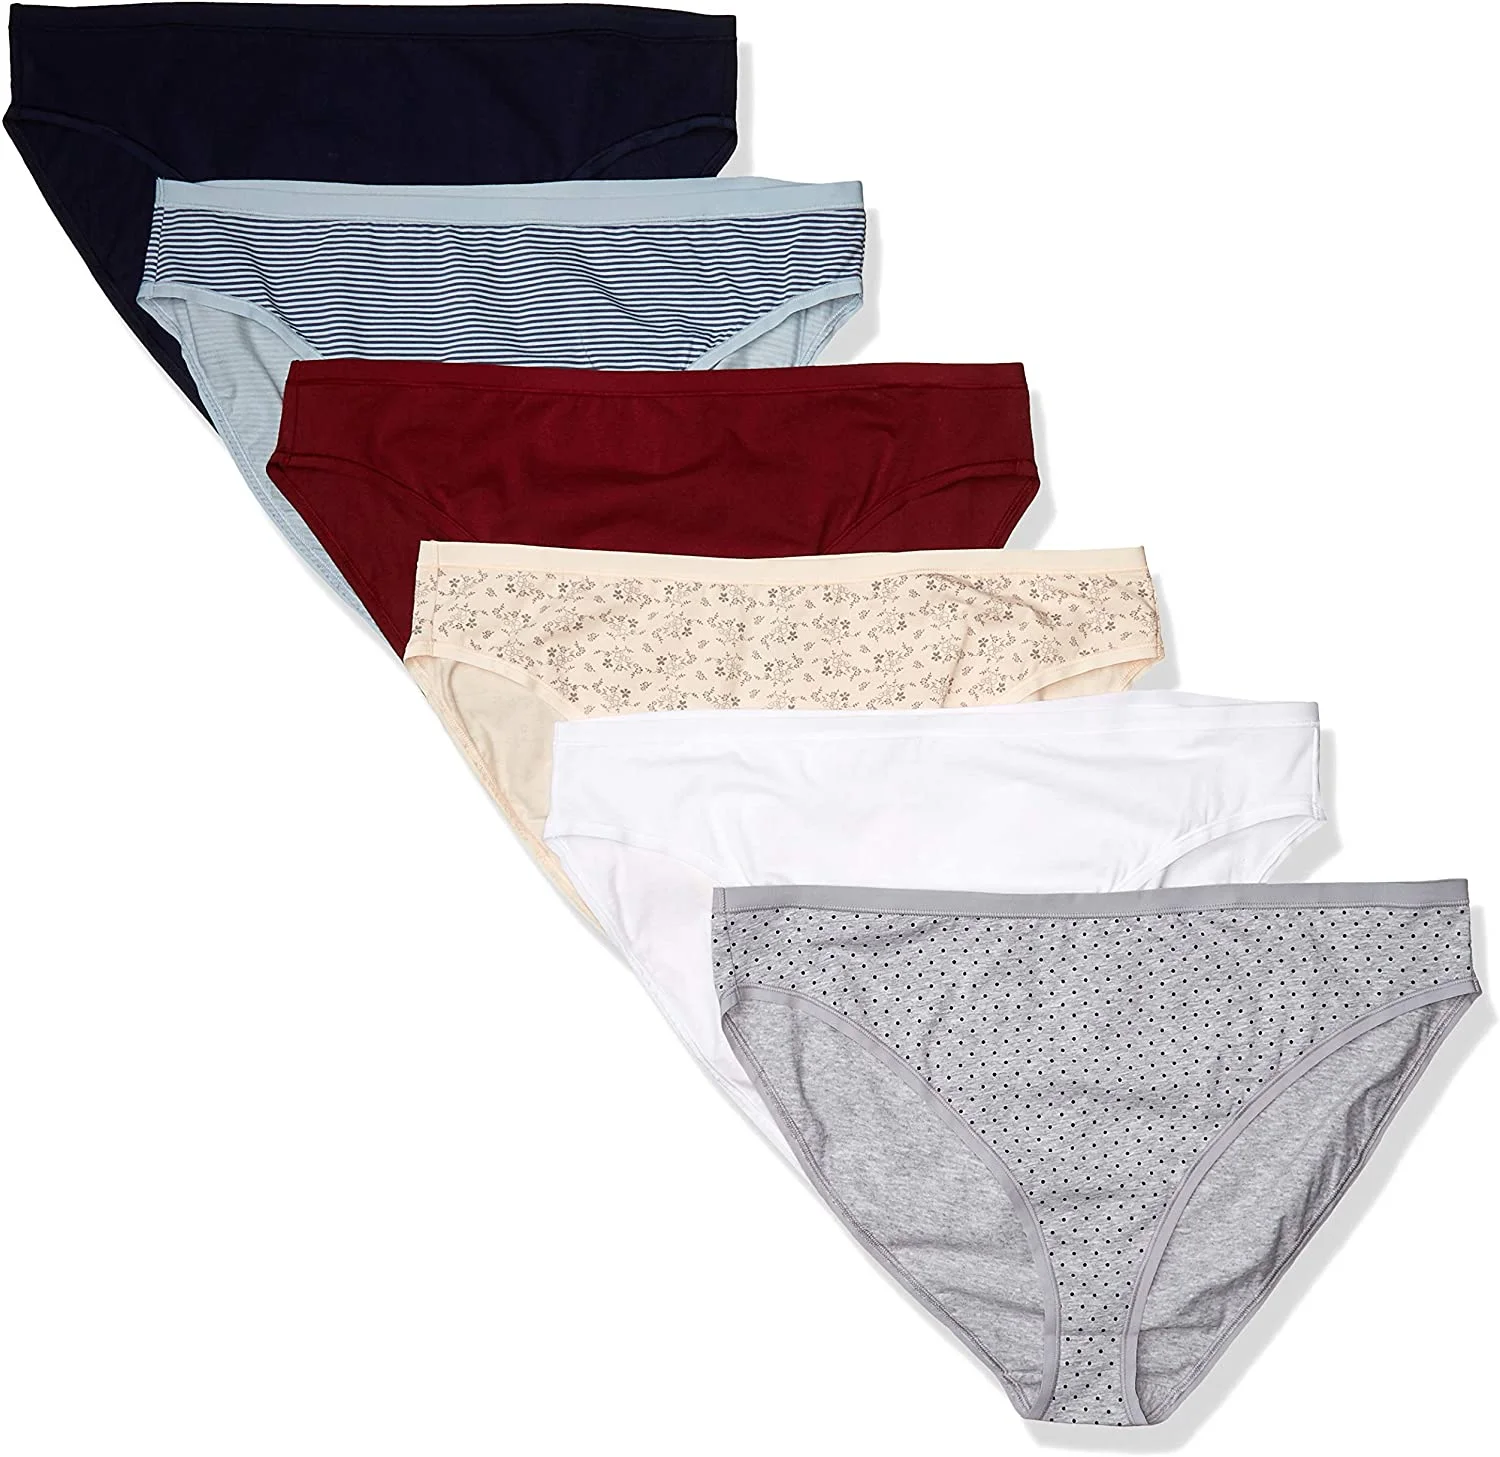 Wholesale Womens Plus Size Hi Cut Cotton Stretch Bikini Brief Underwear Manufcaturer Supplier Bangladesh Factory